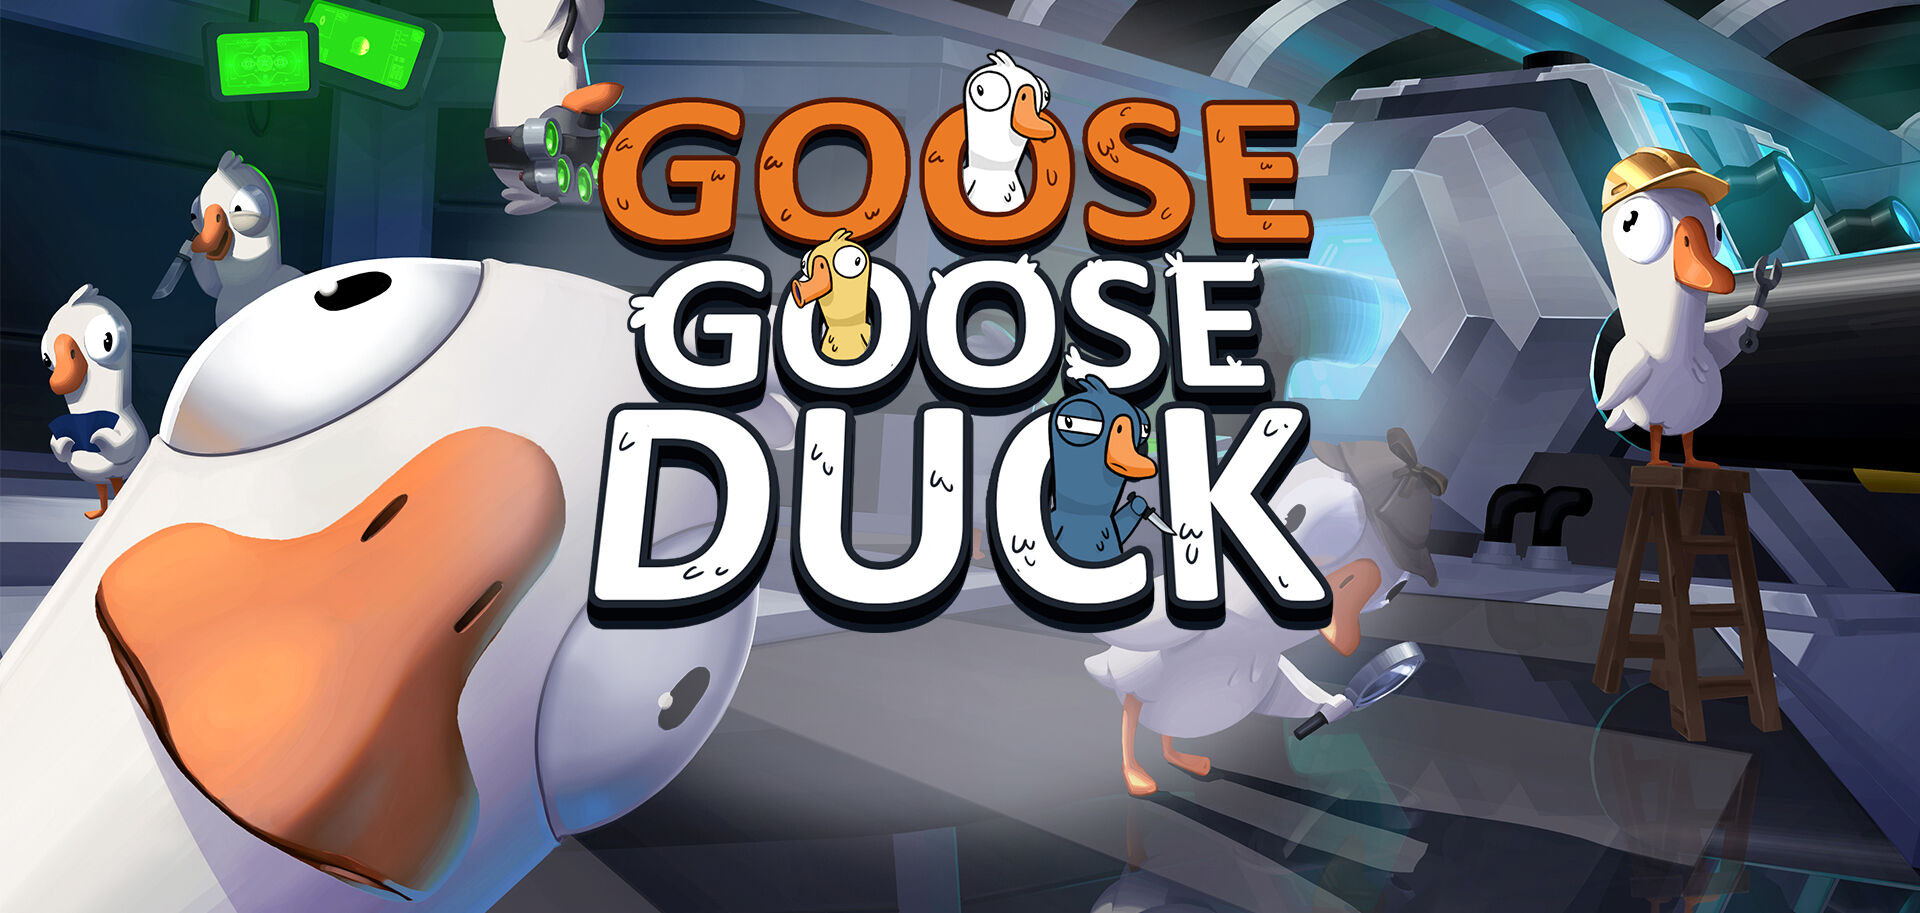 Ngiiii 😭😭 #GooseGooseDuck #Goose #Duck